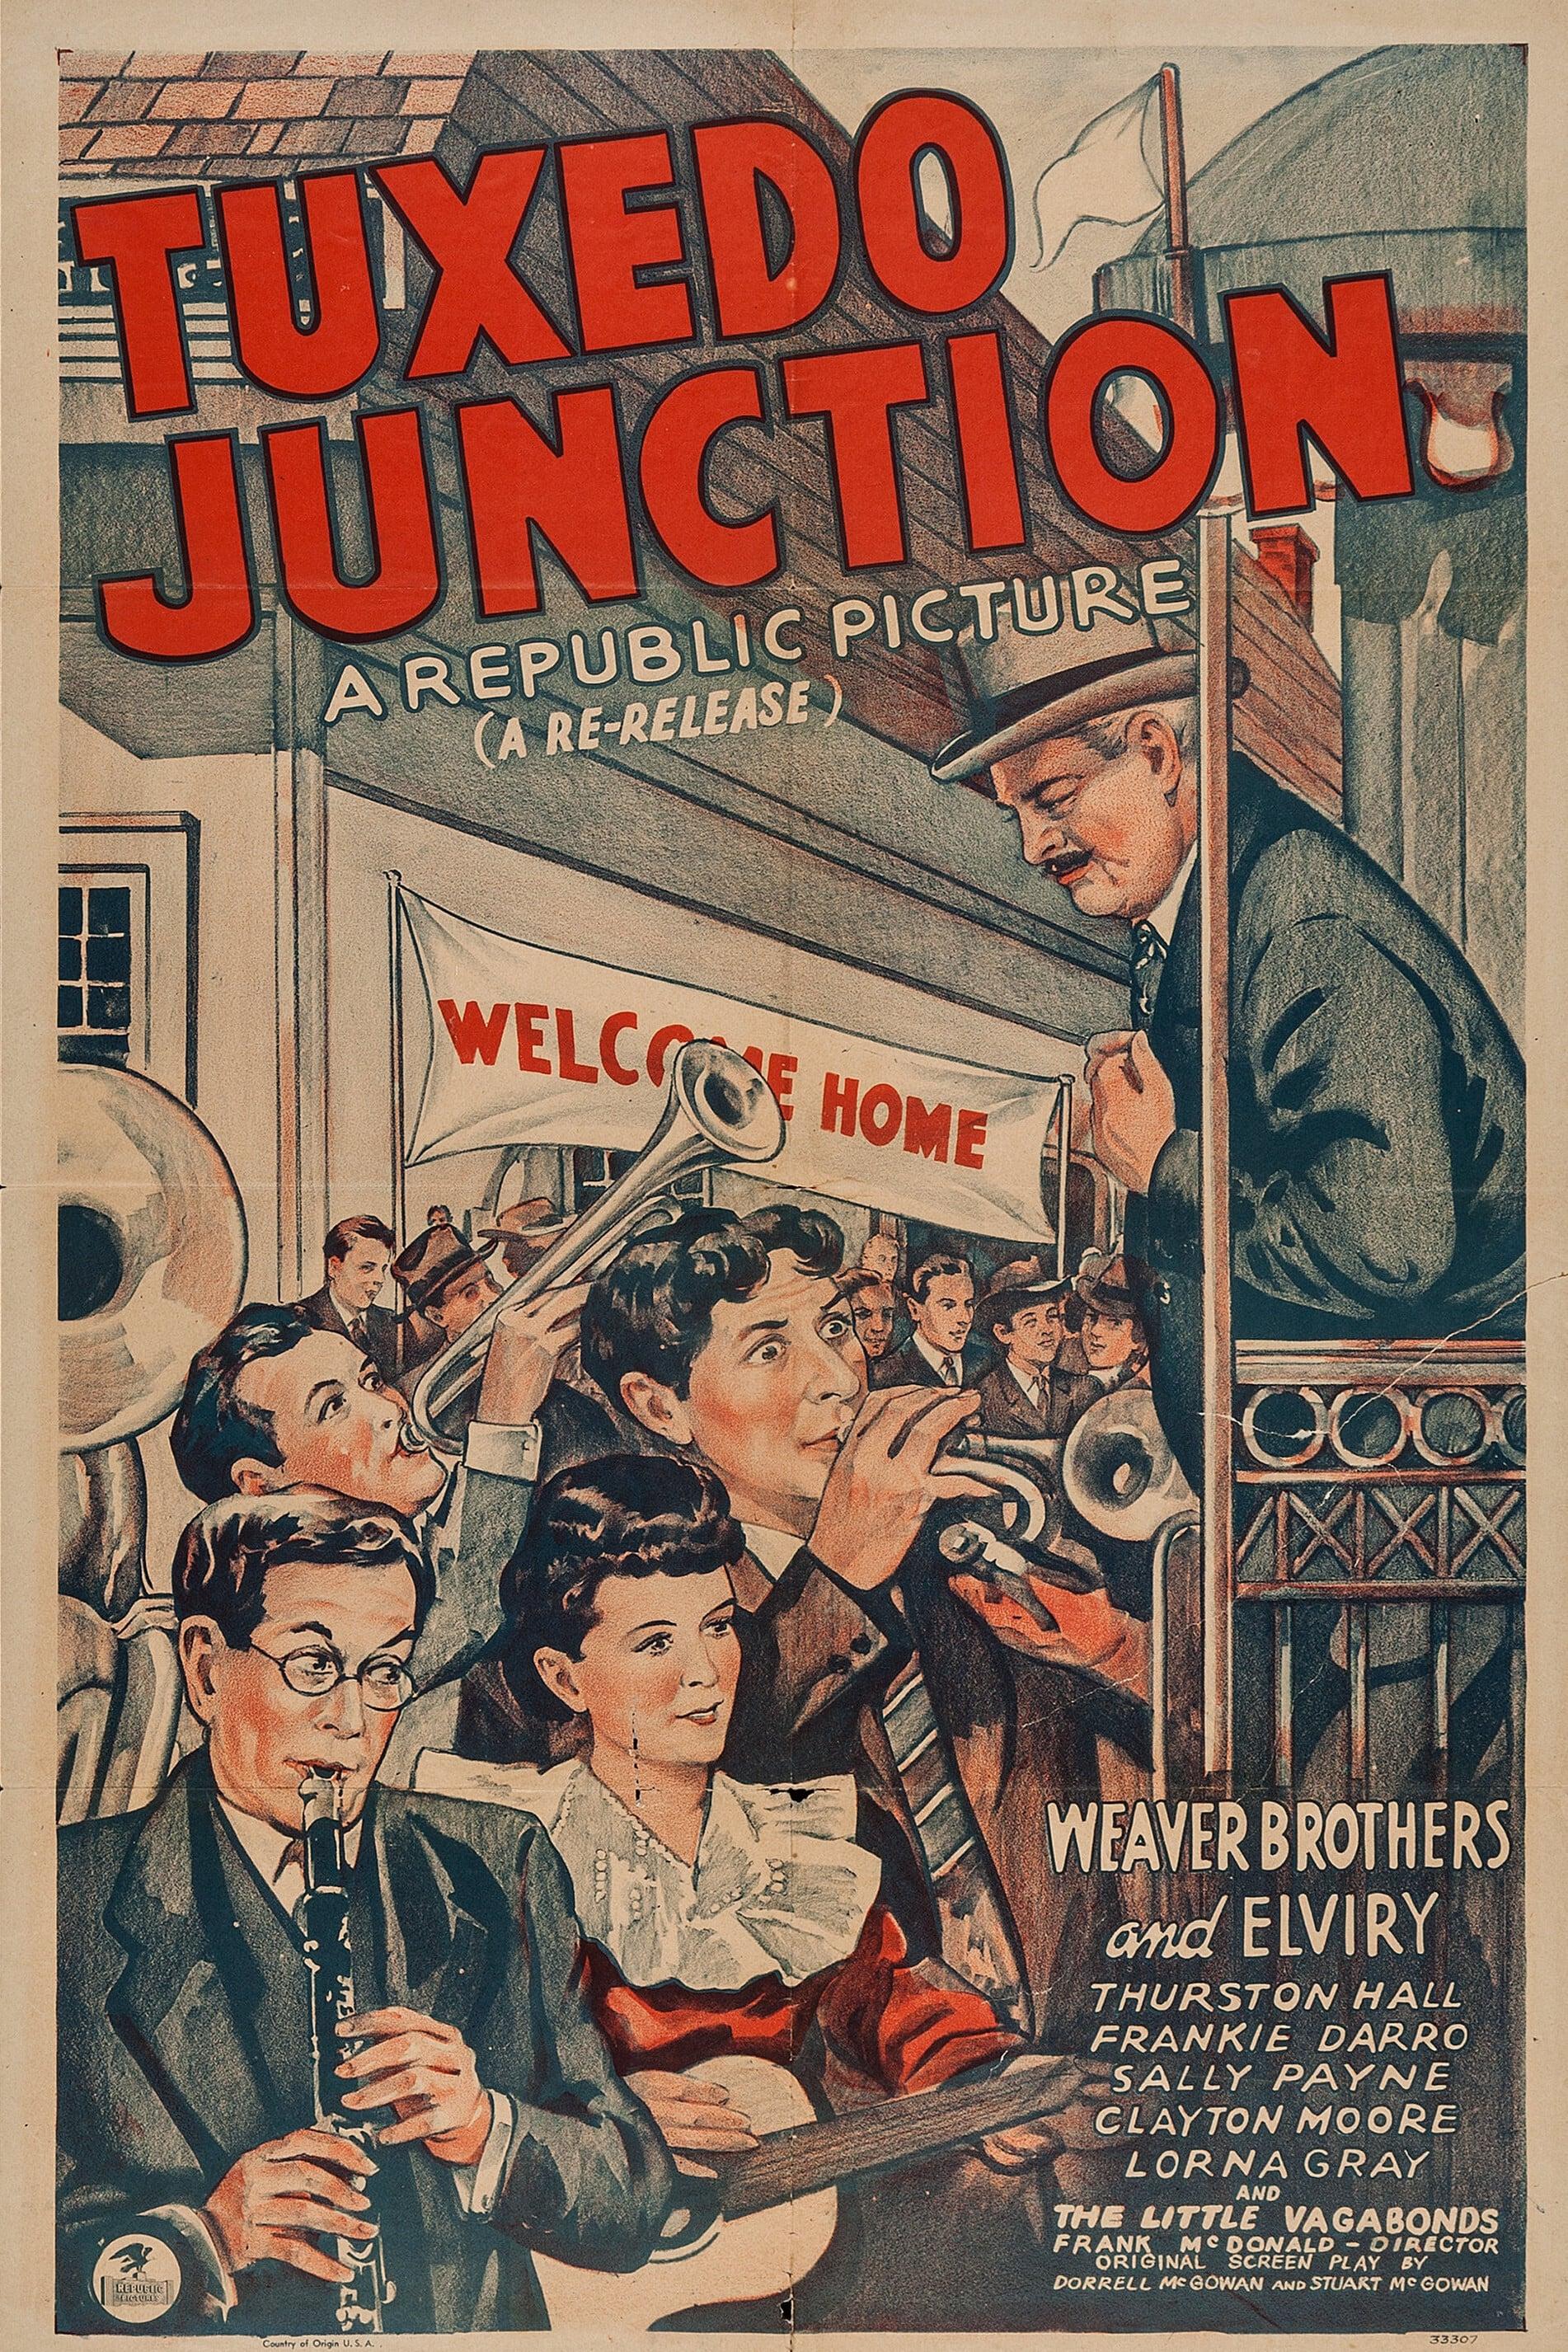 Tuxedo Junction poster